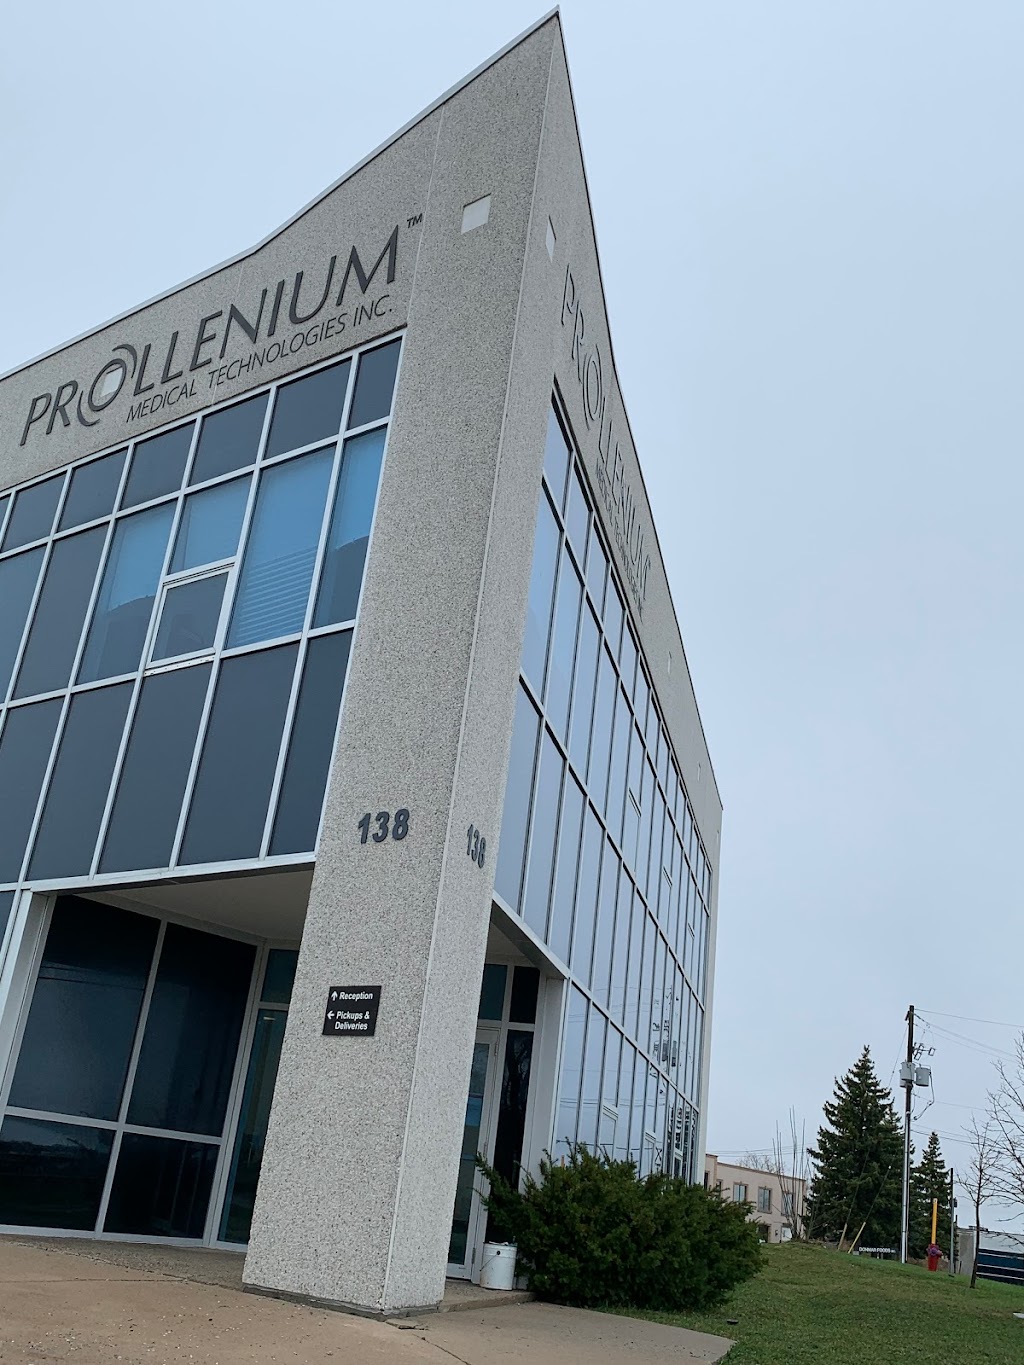 Prollenium Medical Technologies | 138 Industrial Pkwy N, Aurora, ON L4G 4C3, Canada | Phone: (905) 508-1469